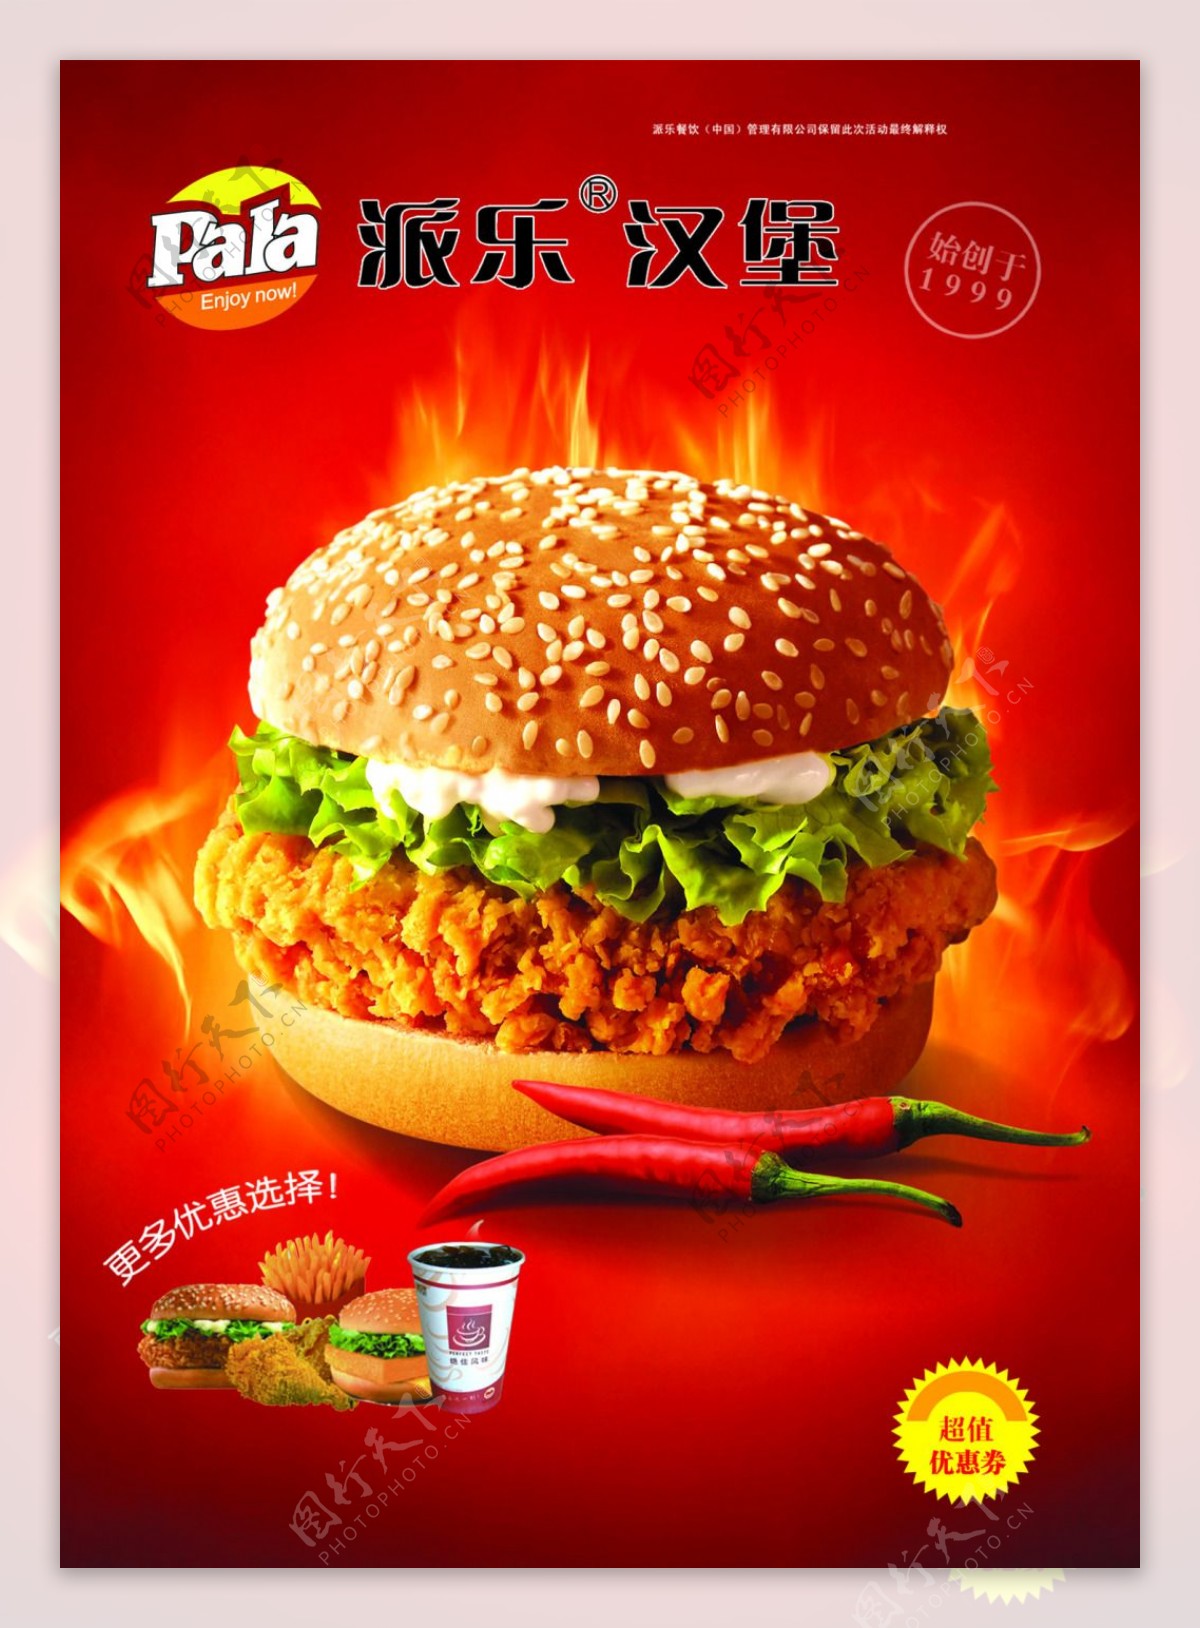 派乐香辣鸡腿汉堡宣传广告